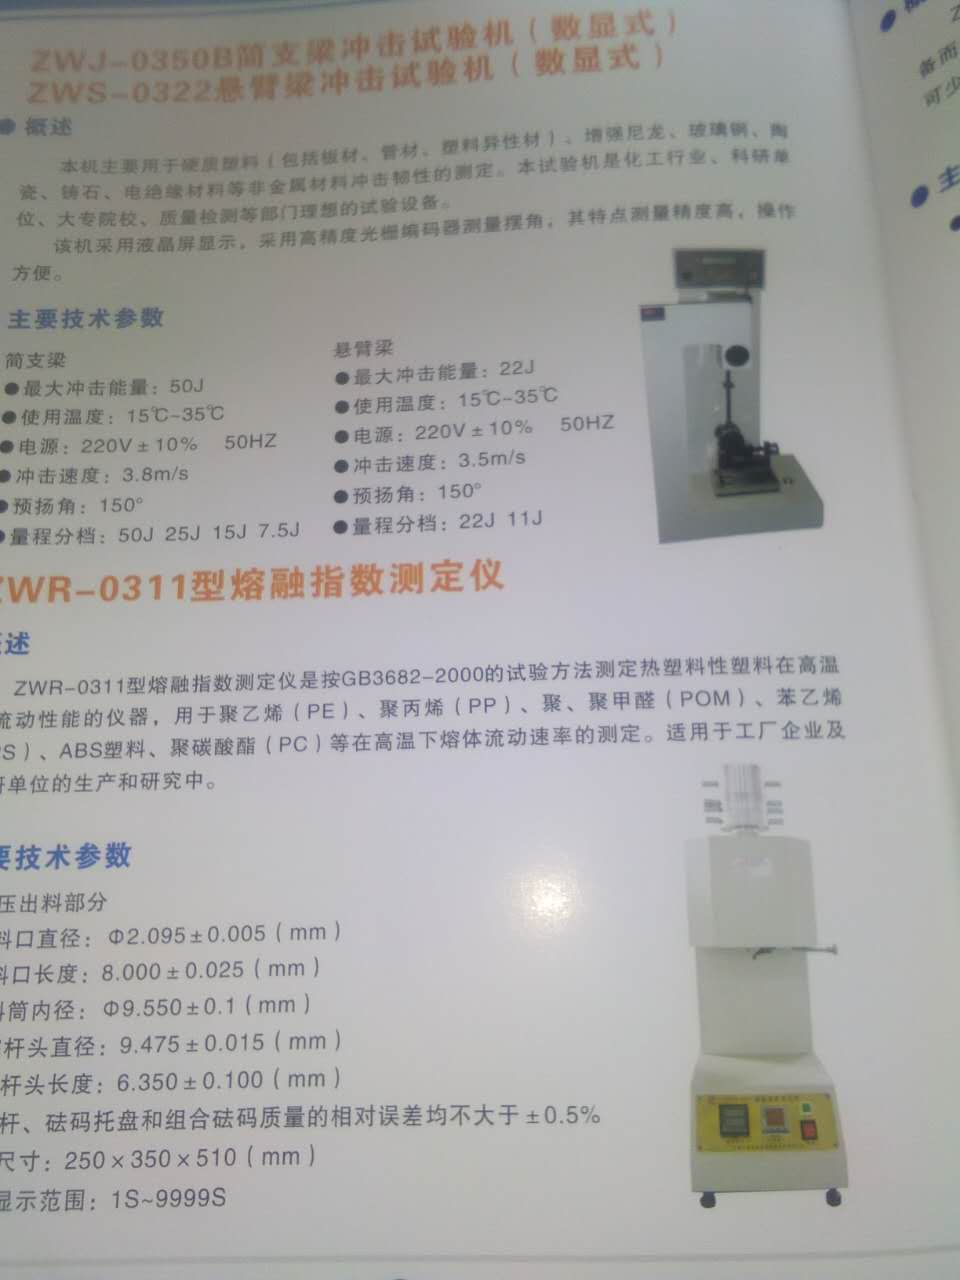 扬州市熔融指数试验仪厂家江苏熔融指数试验仪多少钱一台/供应商